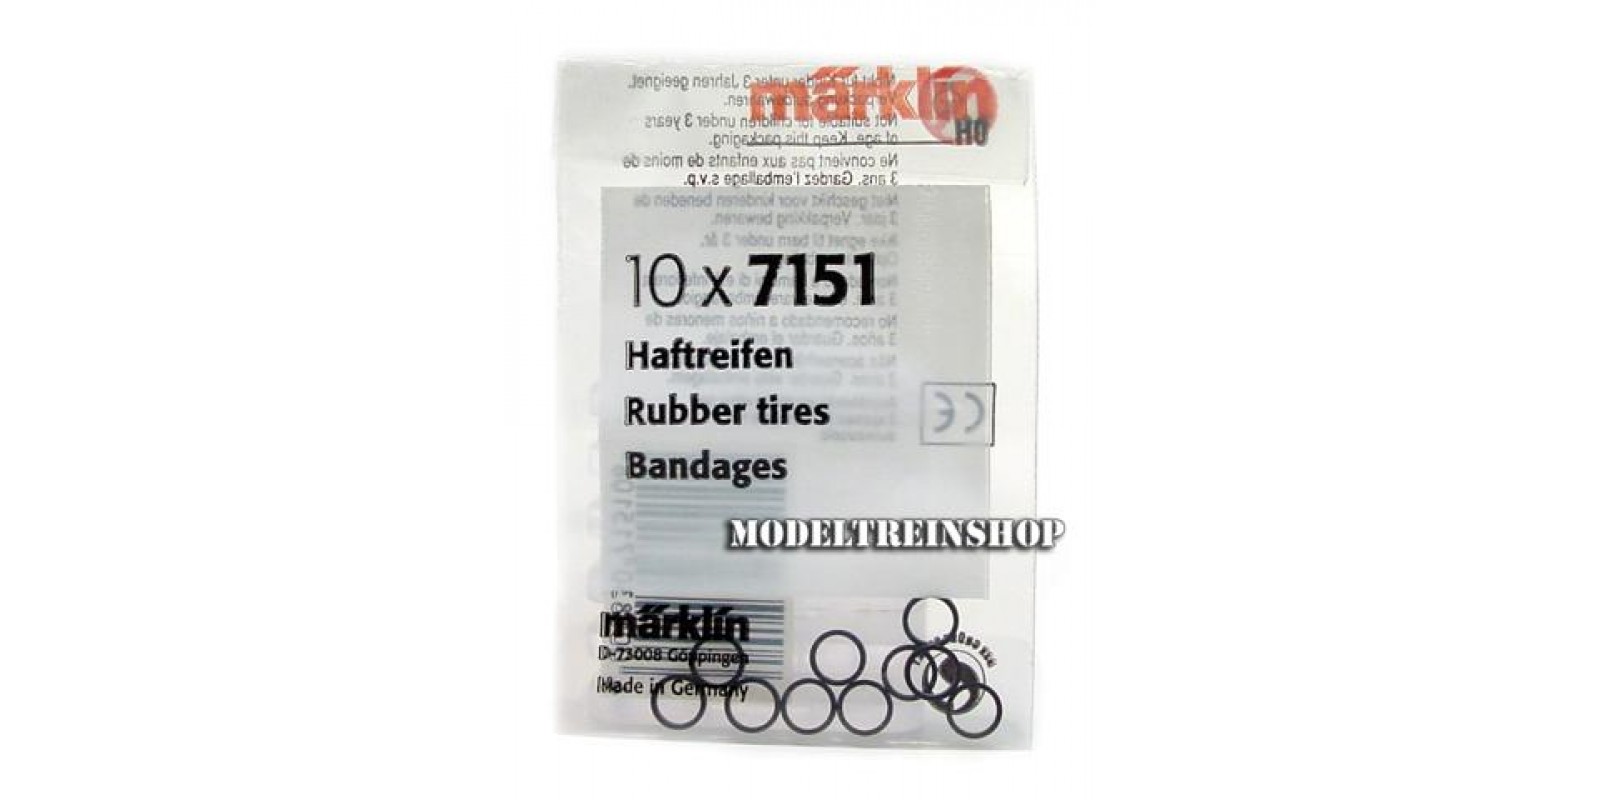 7151 Rubber Tires (10pcs)